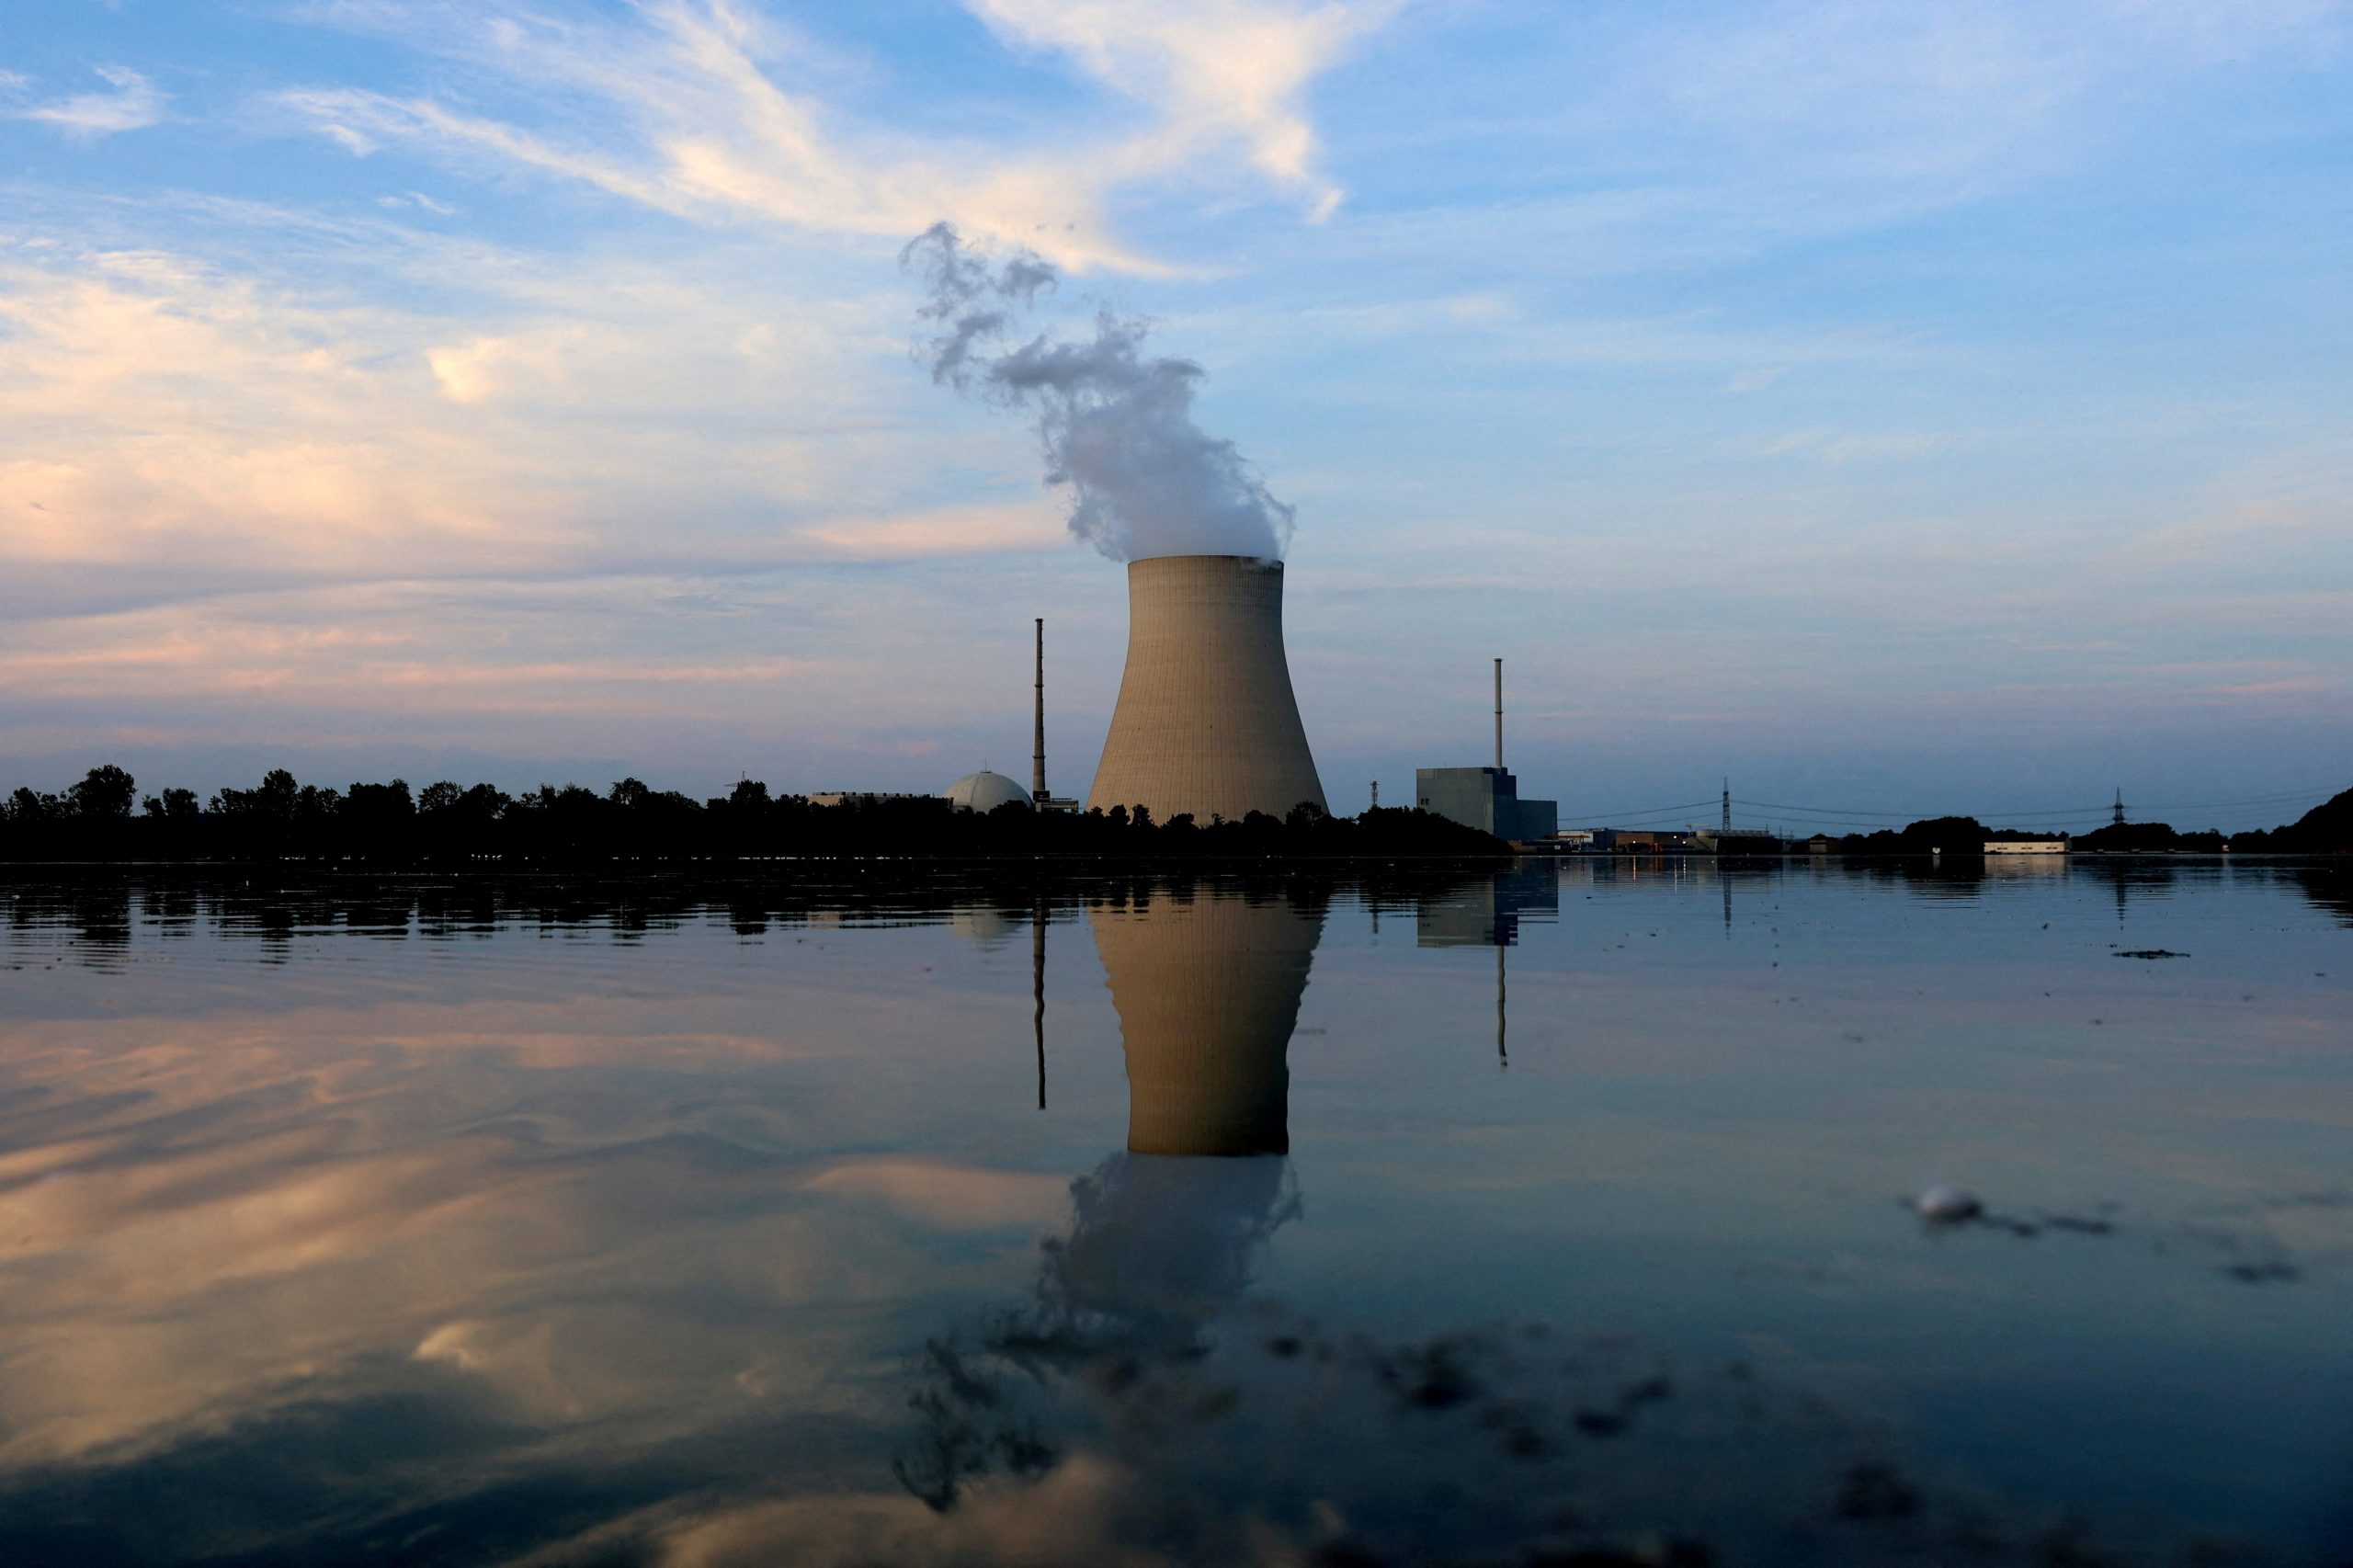 لمحطة الطاقة النووية إيزار 2 بالقرب من لاندشوت في ألمانيا- الصورة من وكالة رويترز